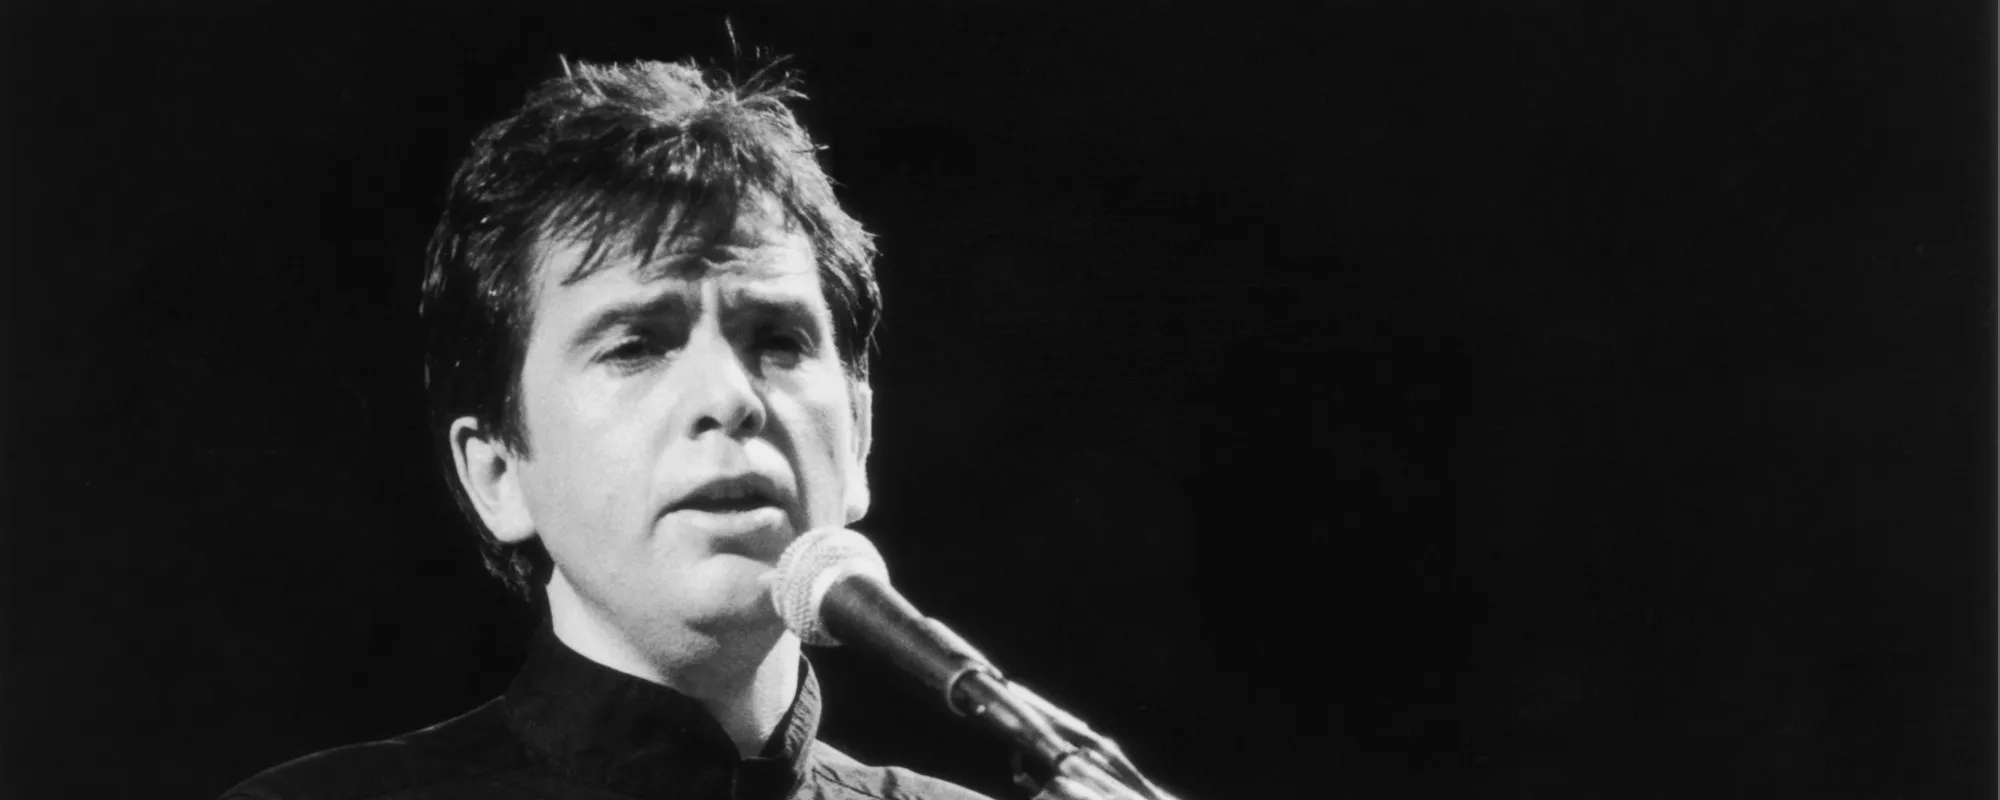 6 of Peter Gabriel’s Favorite Songs